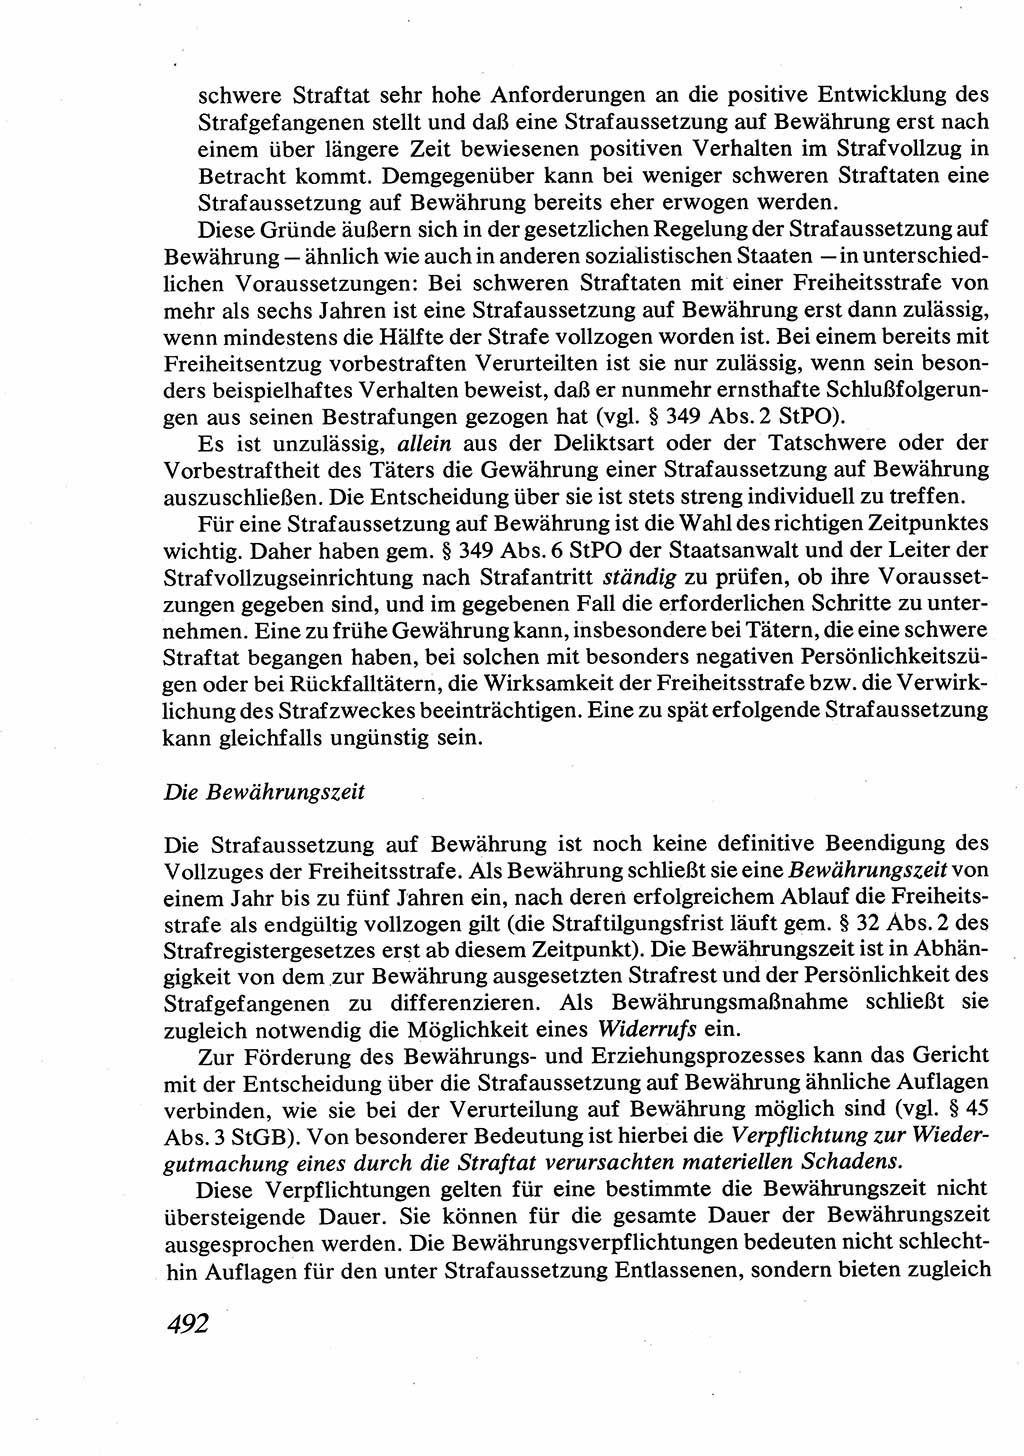 Strafrecht [Deutsche Demokratische Republik (DDR)], Allgemeiner Teil, Lehrbuch 1976, Seite 492 (Strafr. DDR AT Lb. 1976, S. 492)